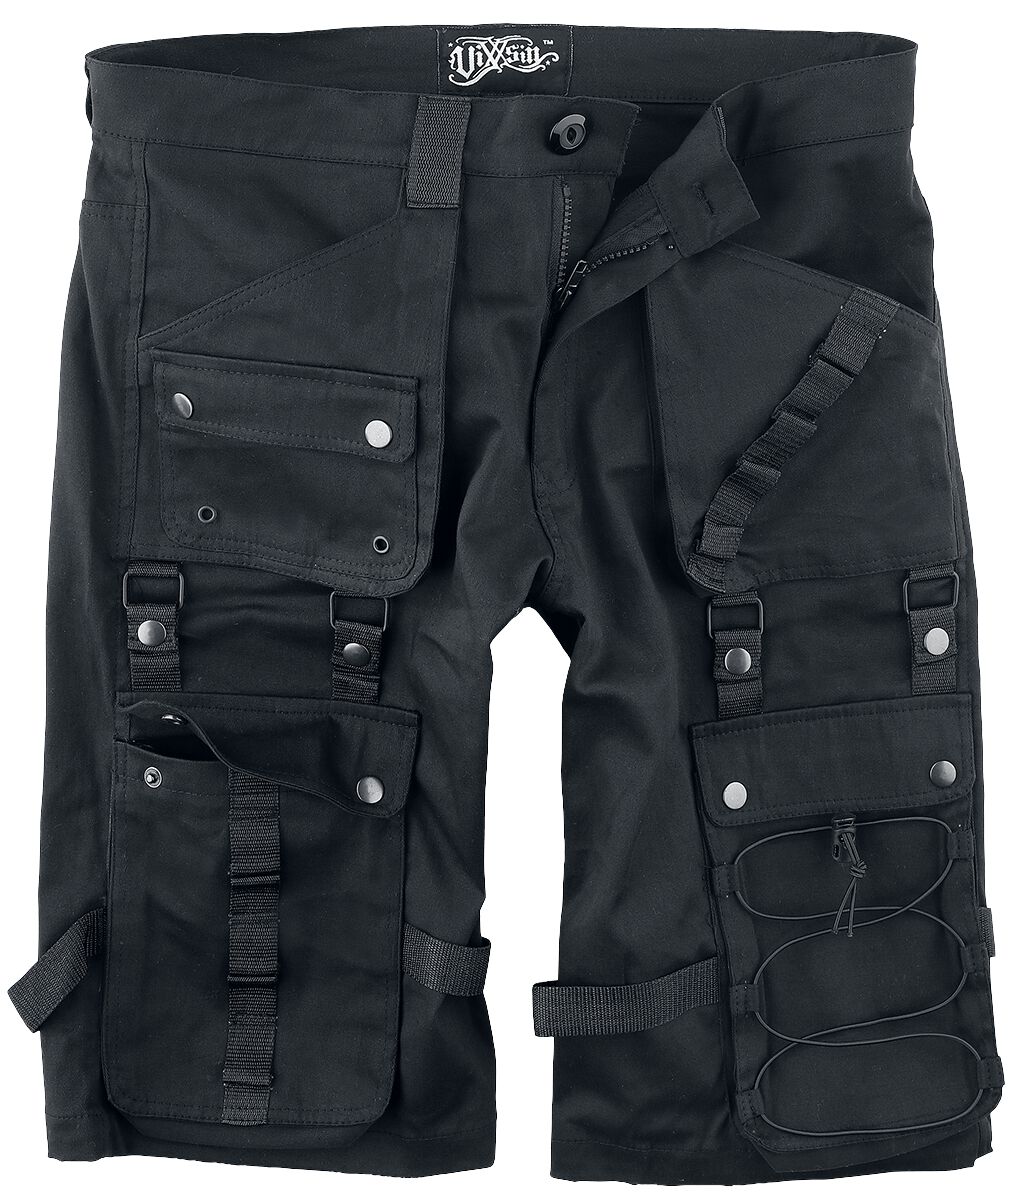 Vixxsin - Gothic Short - Lyall Shorts - 30 bis 38 - für Männer - Größe 38 - schwarz